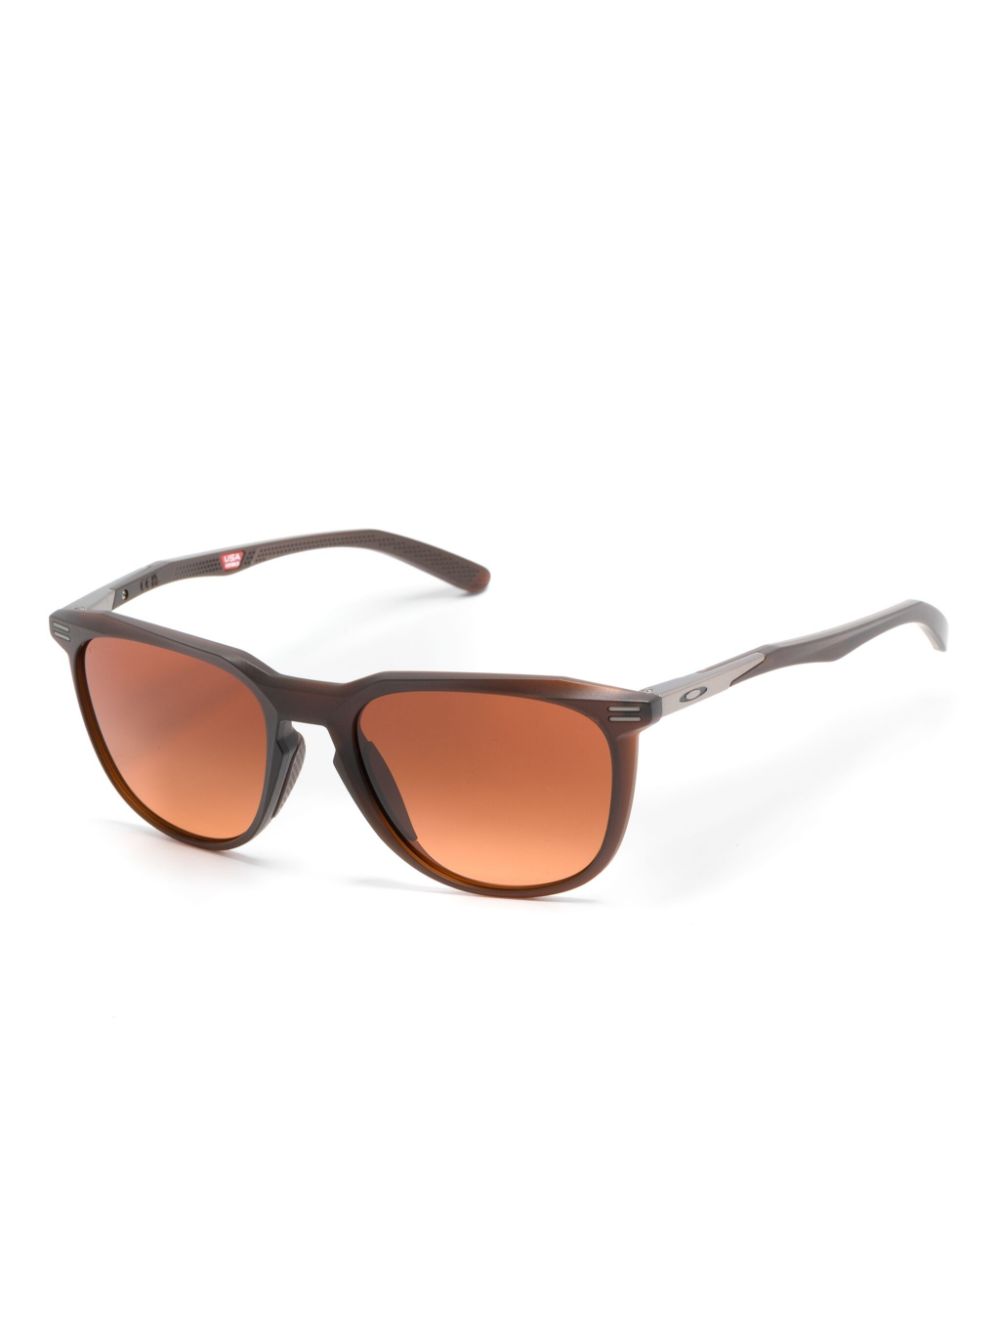 Thurso square-frame sunglasses<BR/><BR/><BR/>